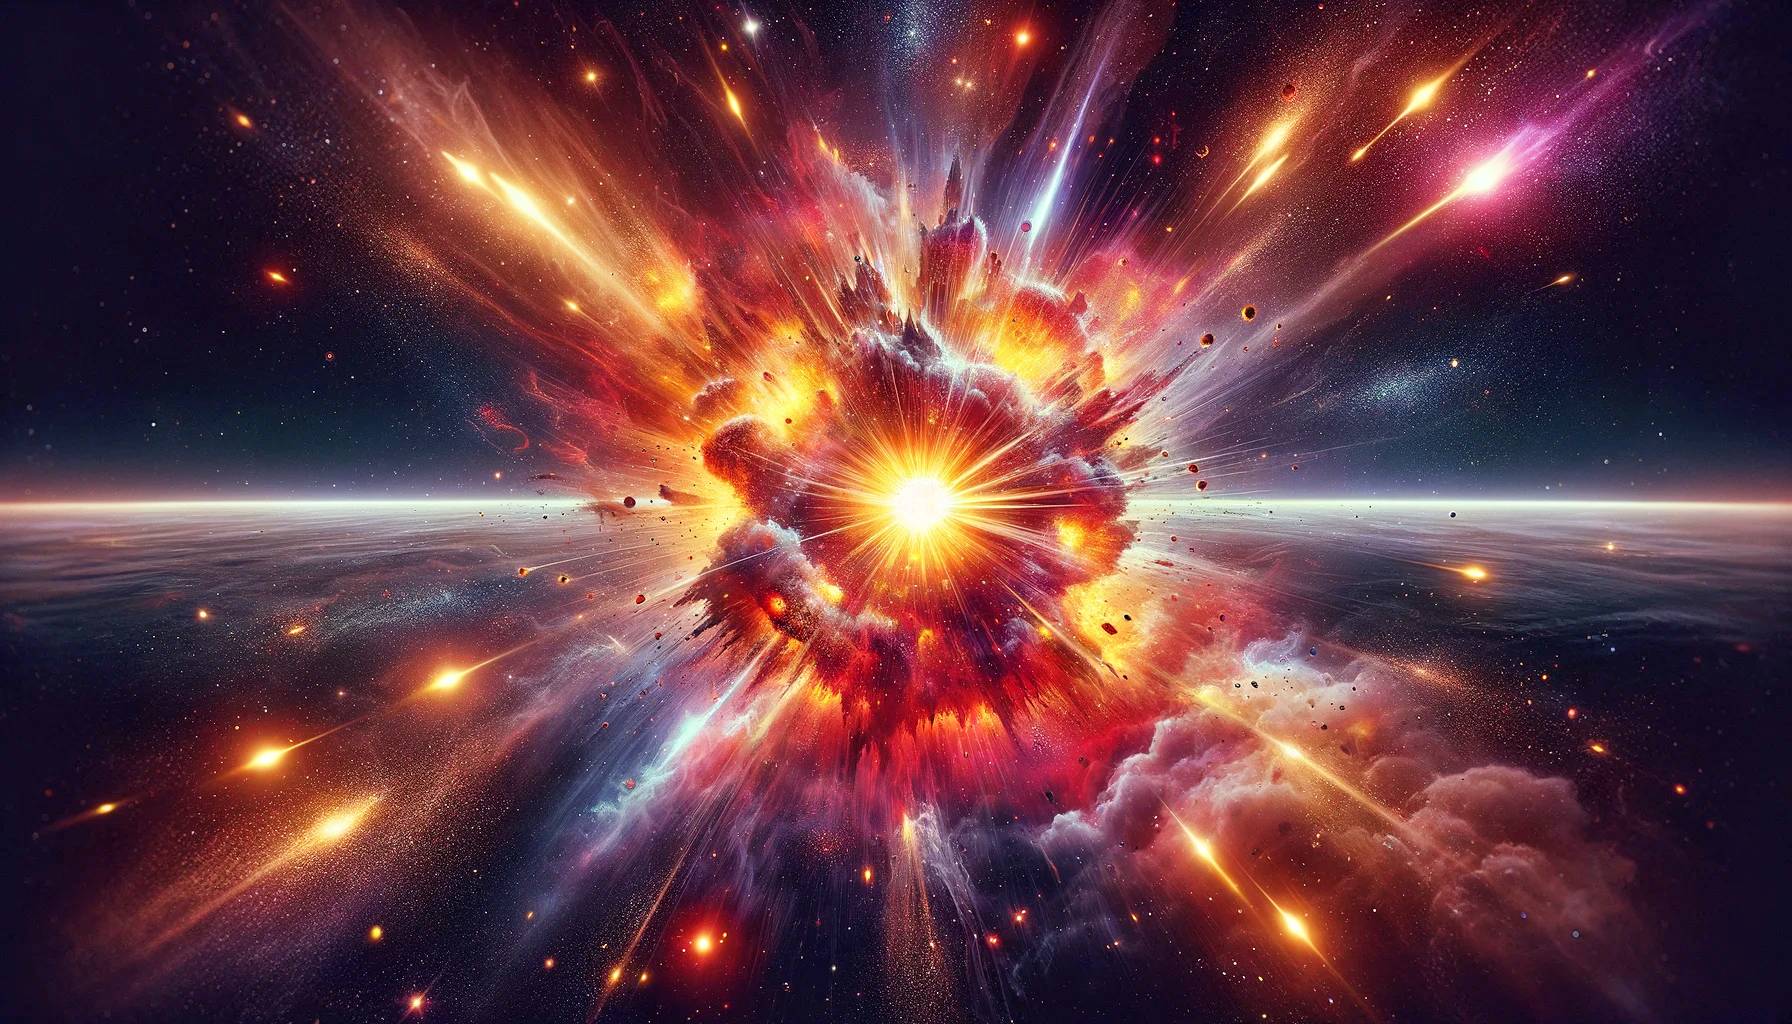 L'esplosione di una stella sfida le leggi della fisica e ha lasciato i ricercatori senza spiegazioni